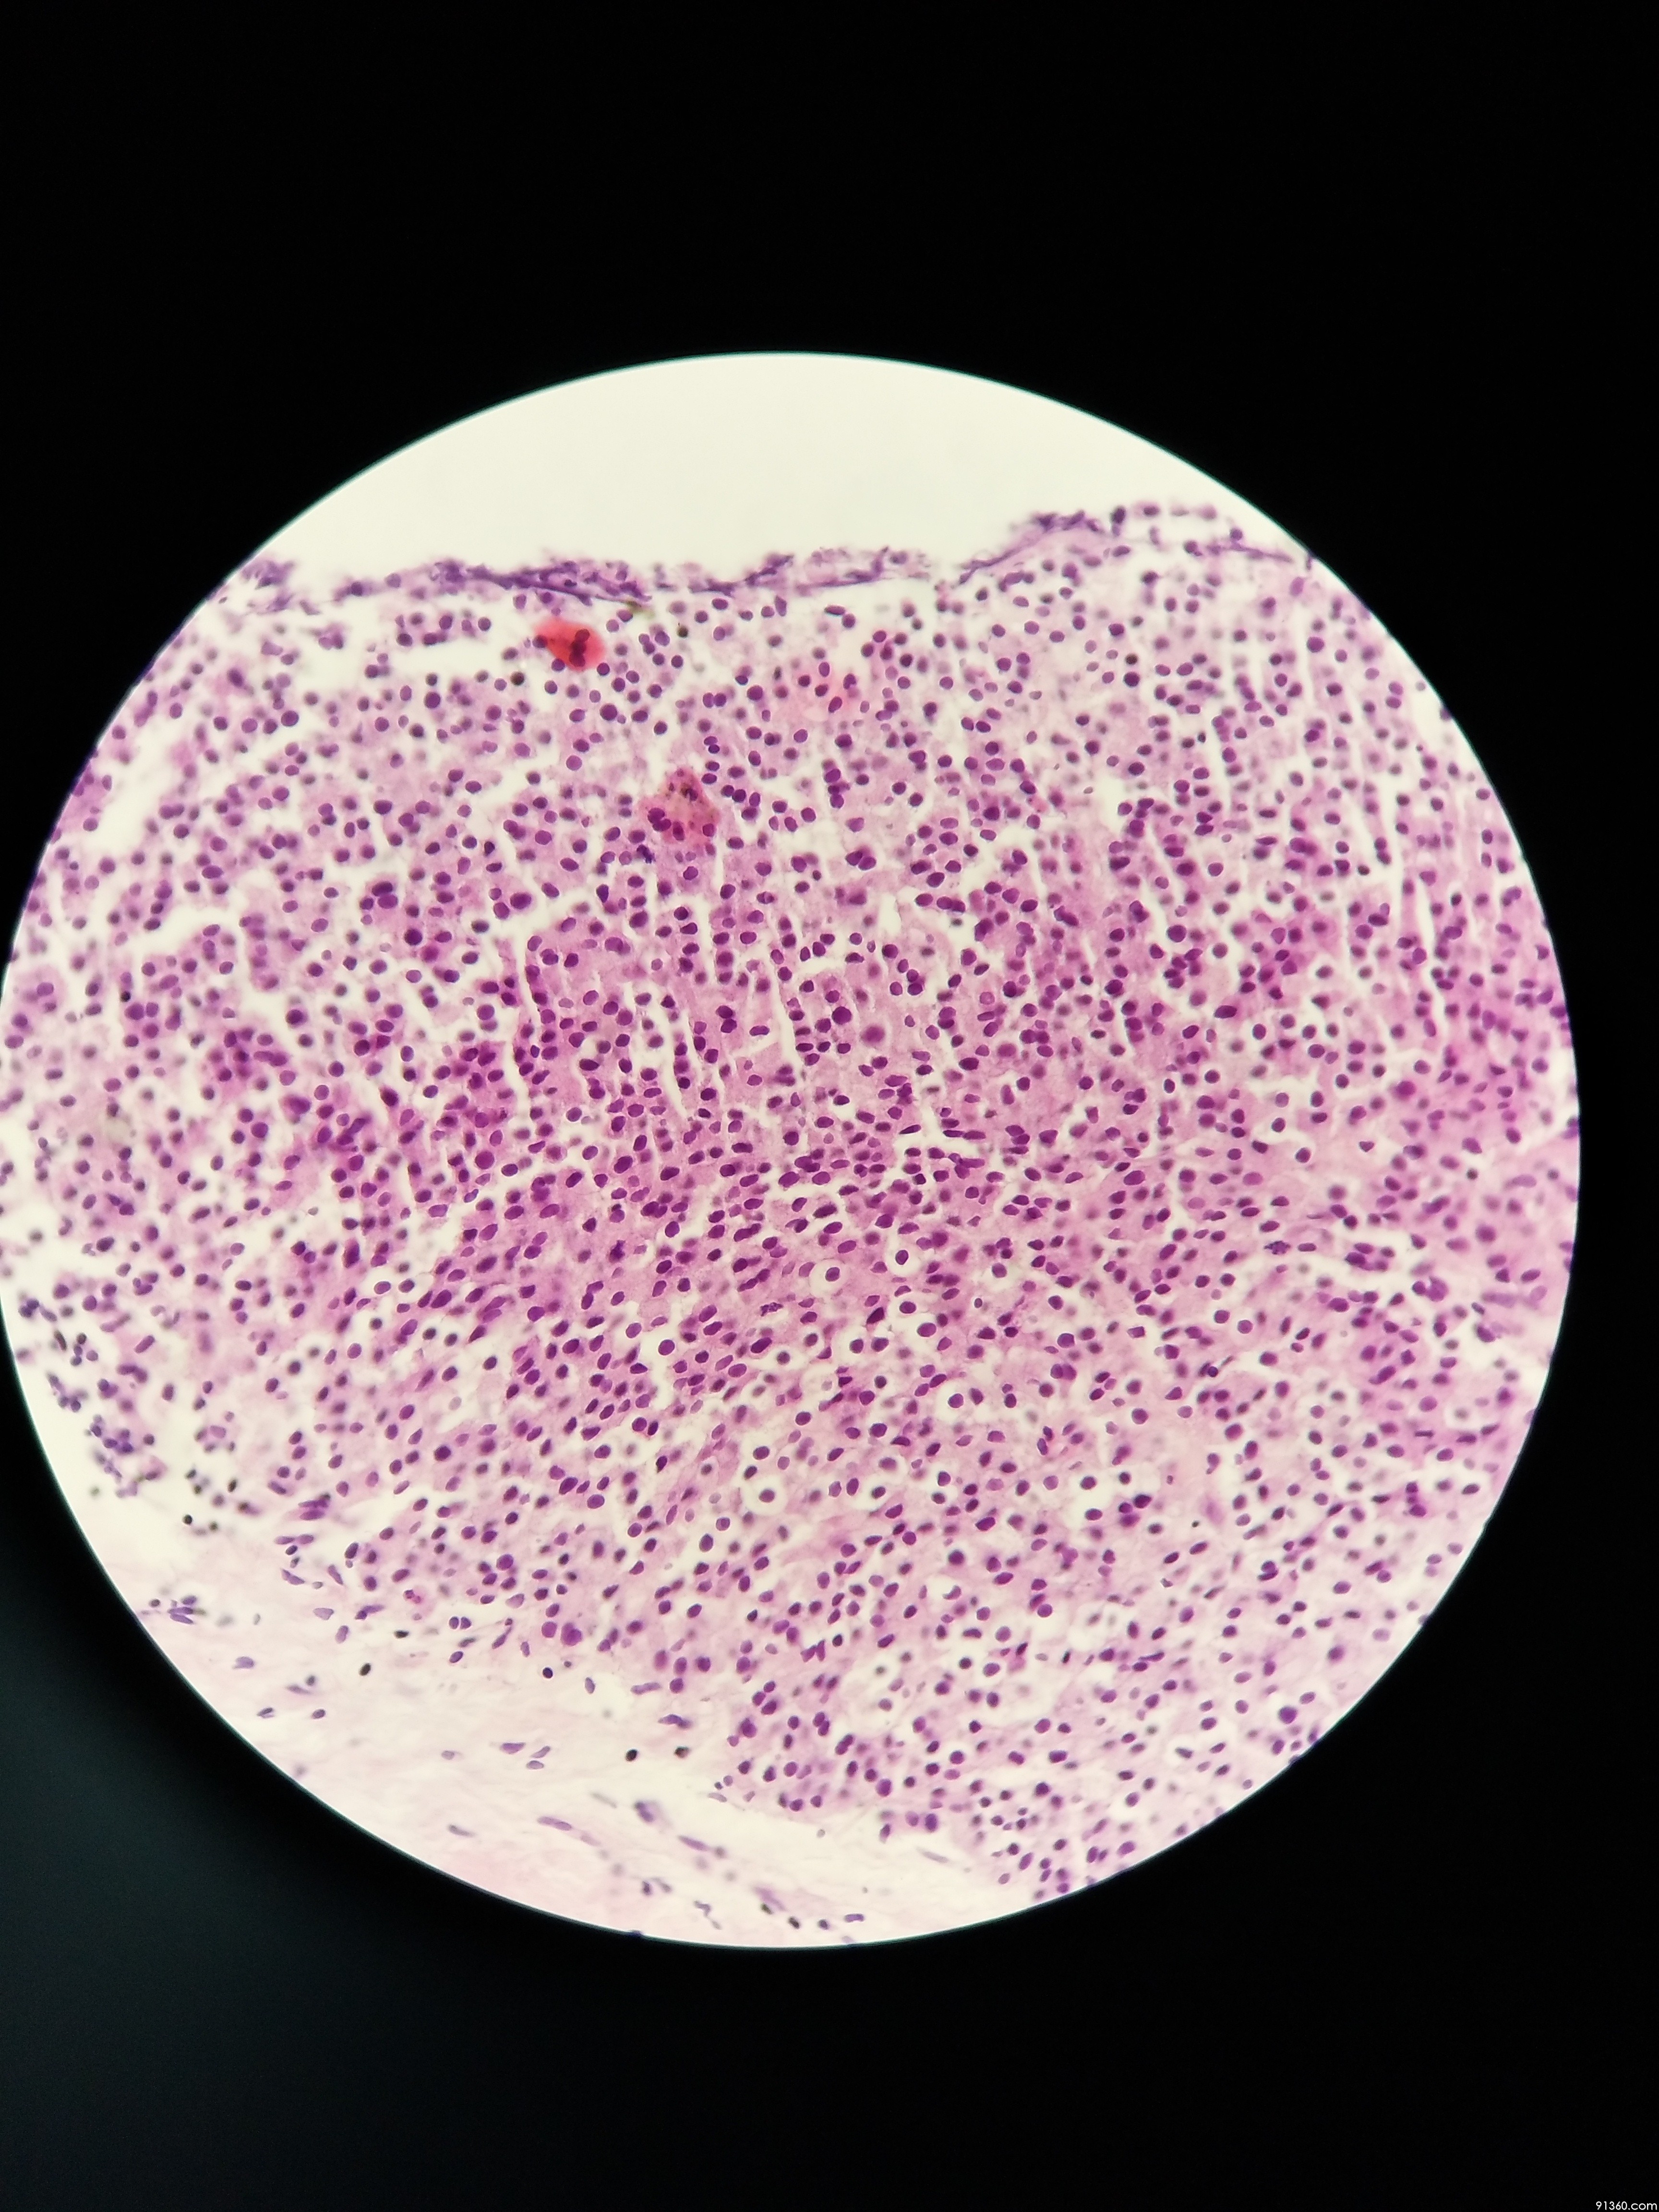 肉芽组织炎细胞图片